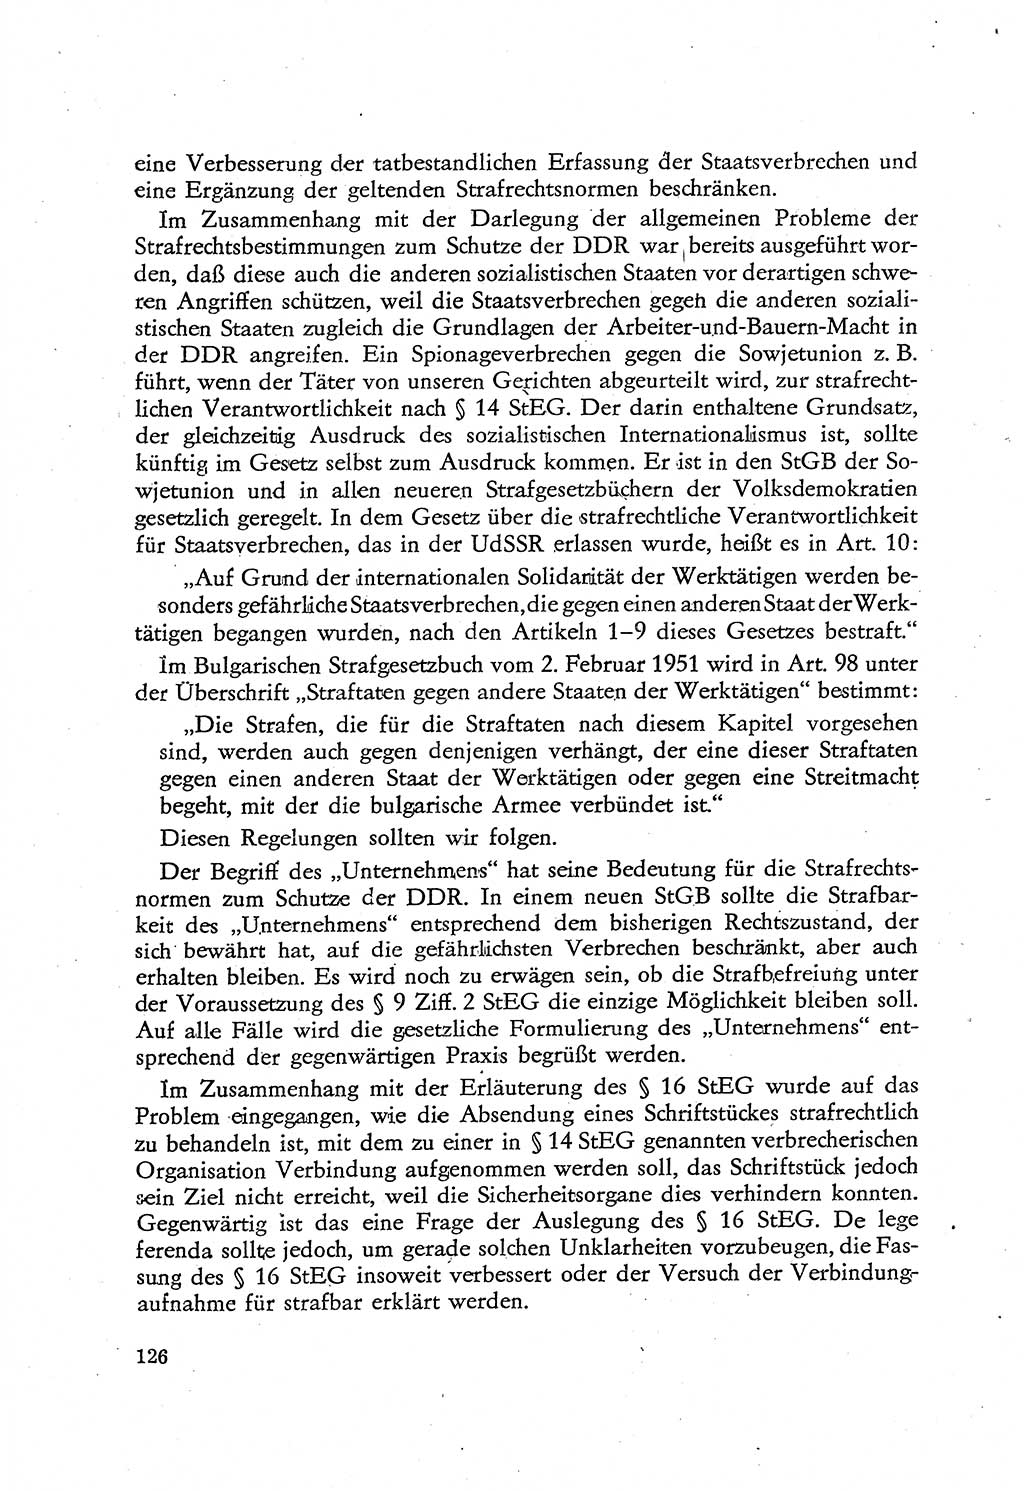 Beiträge zum Strafrecht [Deutsche Demokratische Republik (DDR)], Staatsverbrechen 1959, Seite 126 (Beitr. Strafr. DDR St.-Verbr. 1959, S. 126)